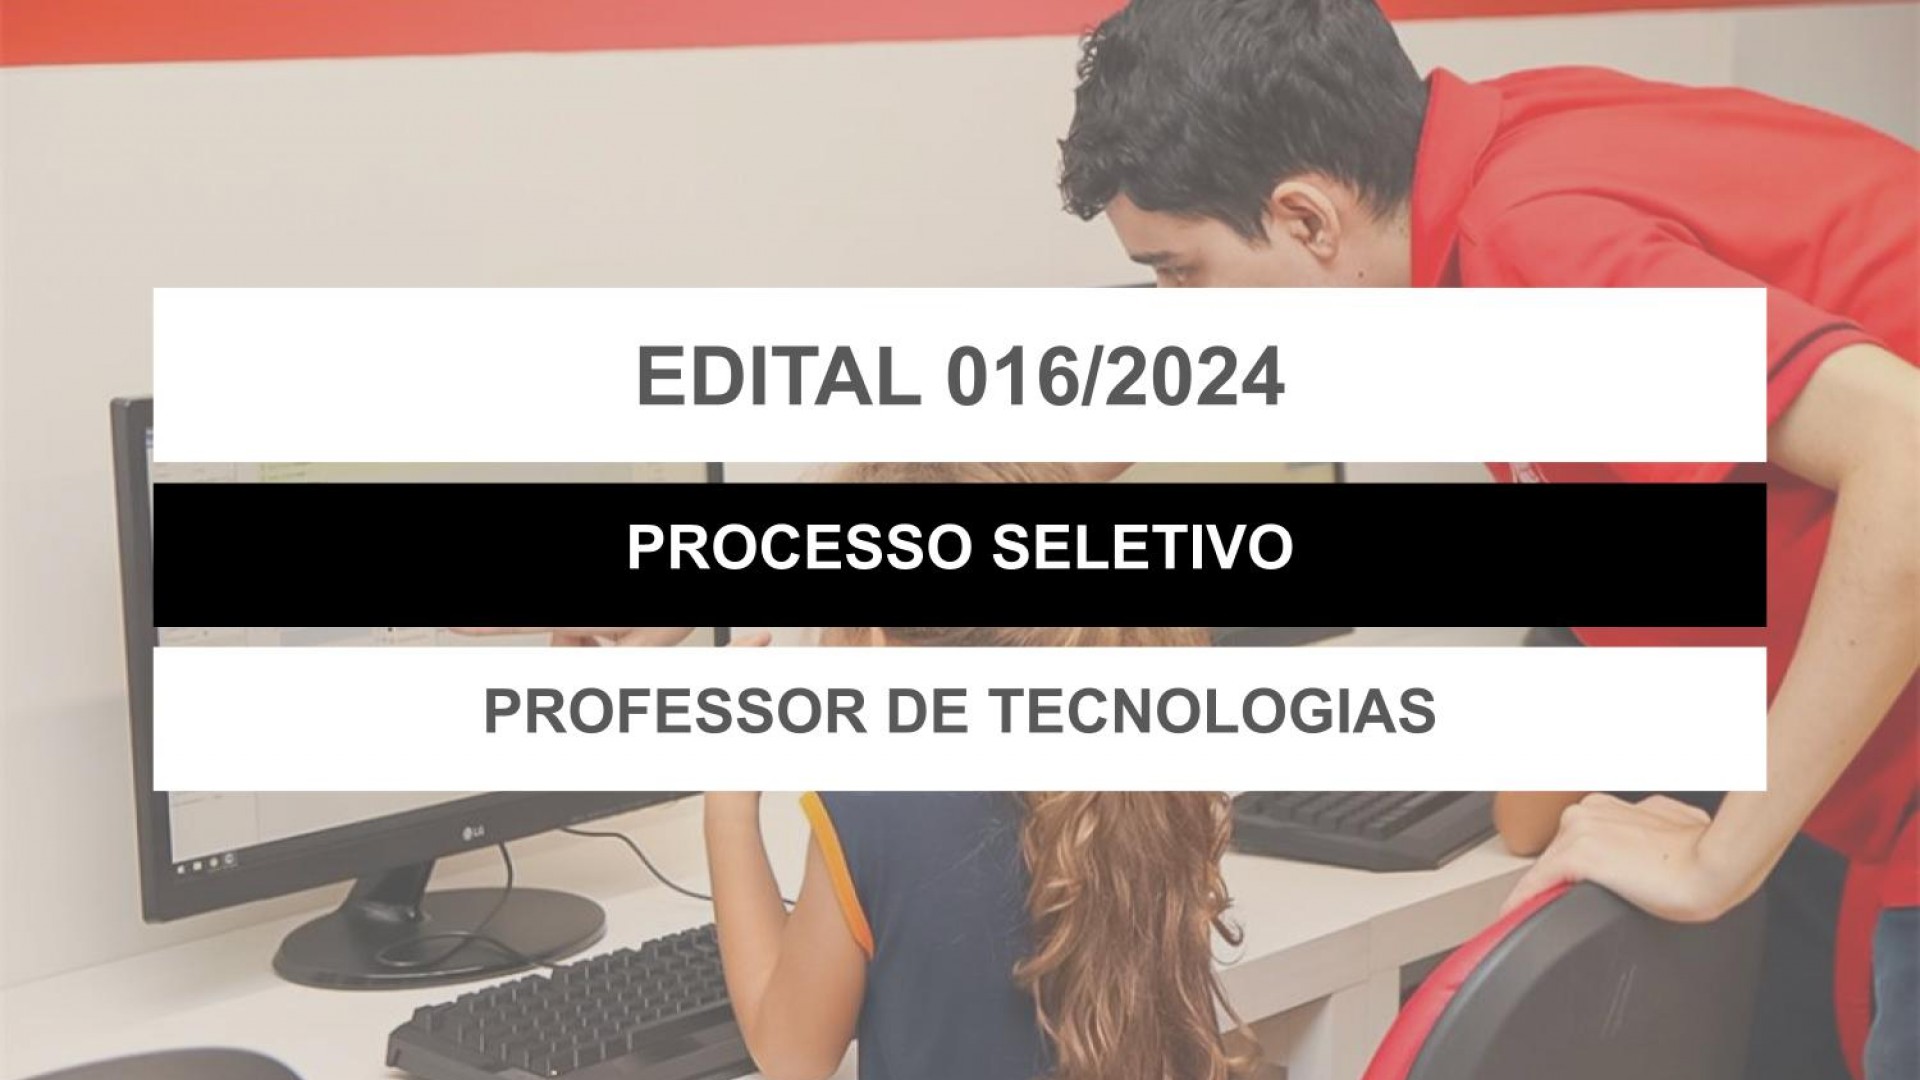 EDITAL EDUCAÇÃO Nº 016/2024 - PROFESSOR DE TECNOLOGIA